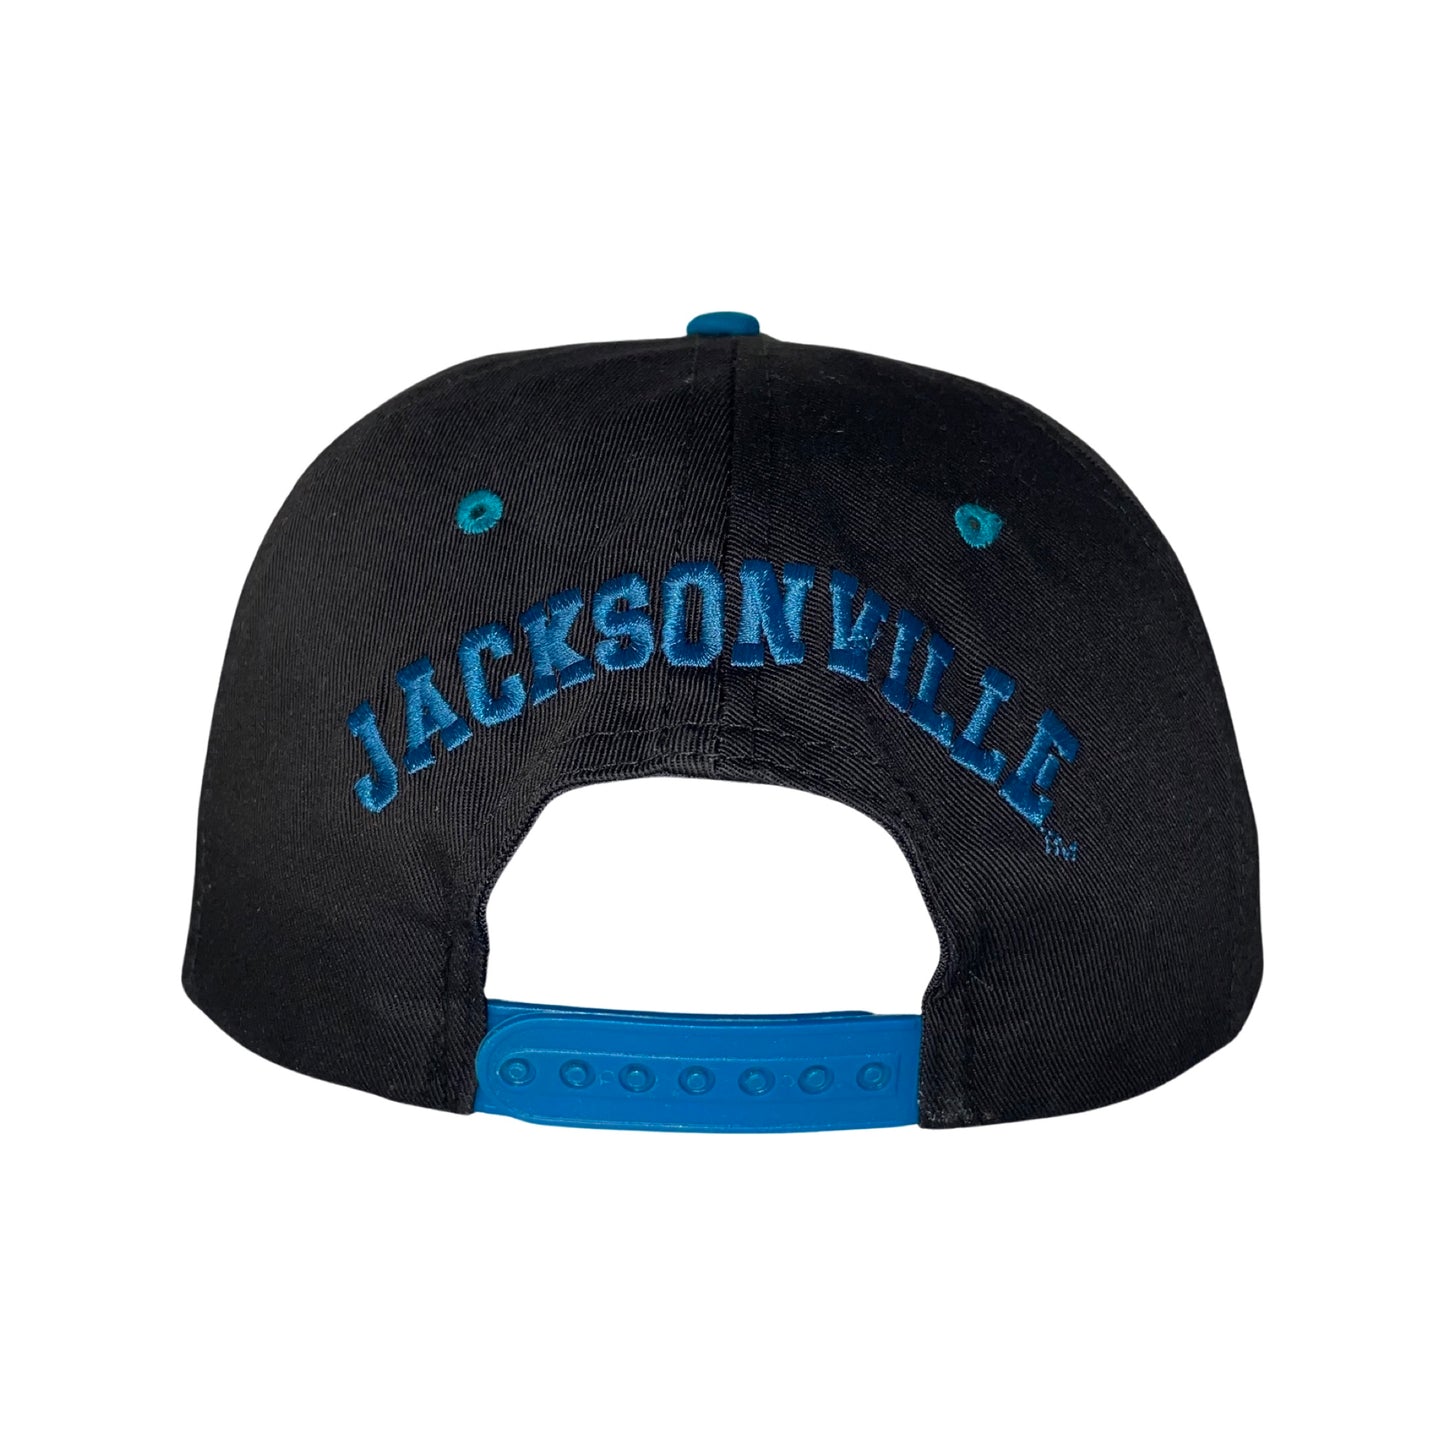 Vintage Jacksonville Jaguars LOGO 7 hat